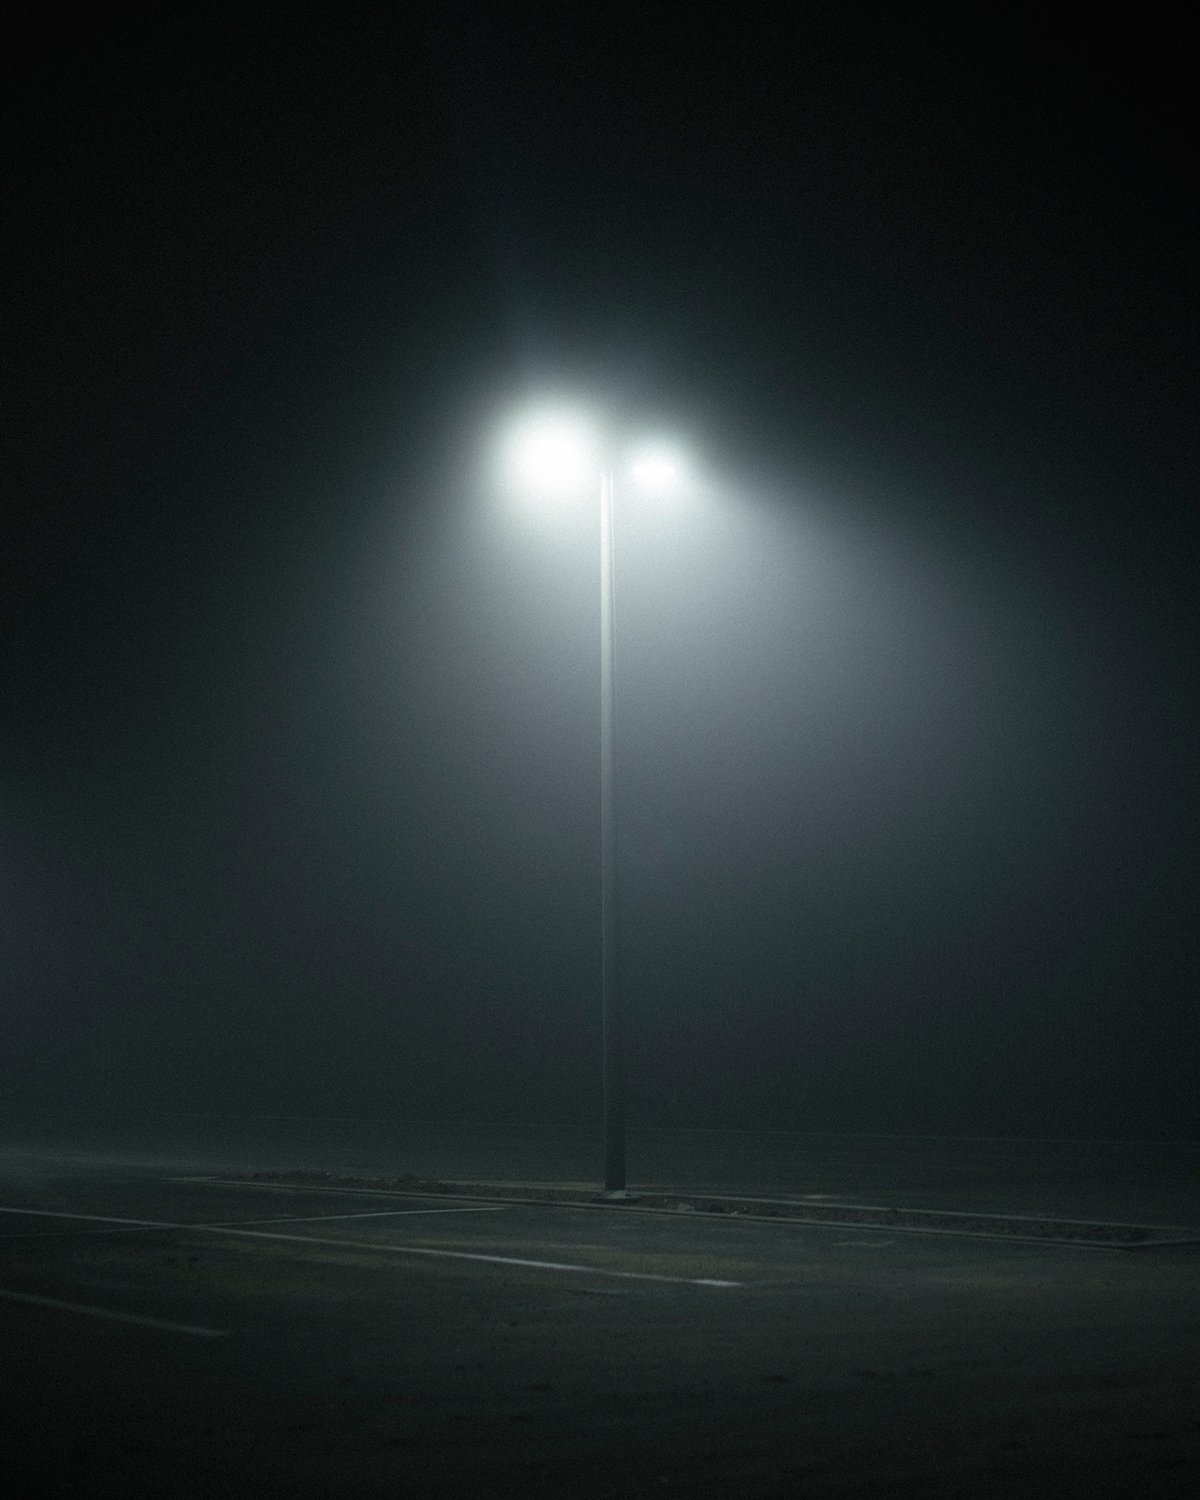 lost deserted desolate fog mist streets buildings light dark Cinema movie mood eerie abandoned